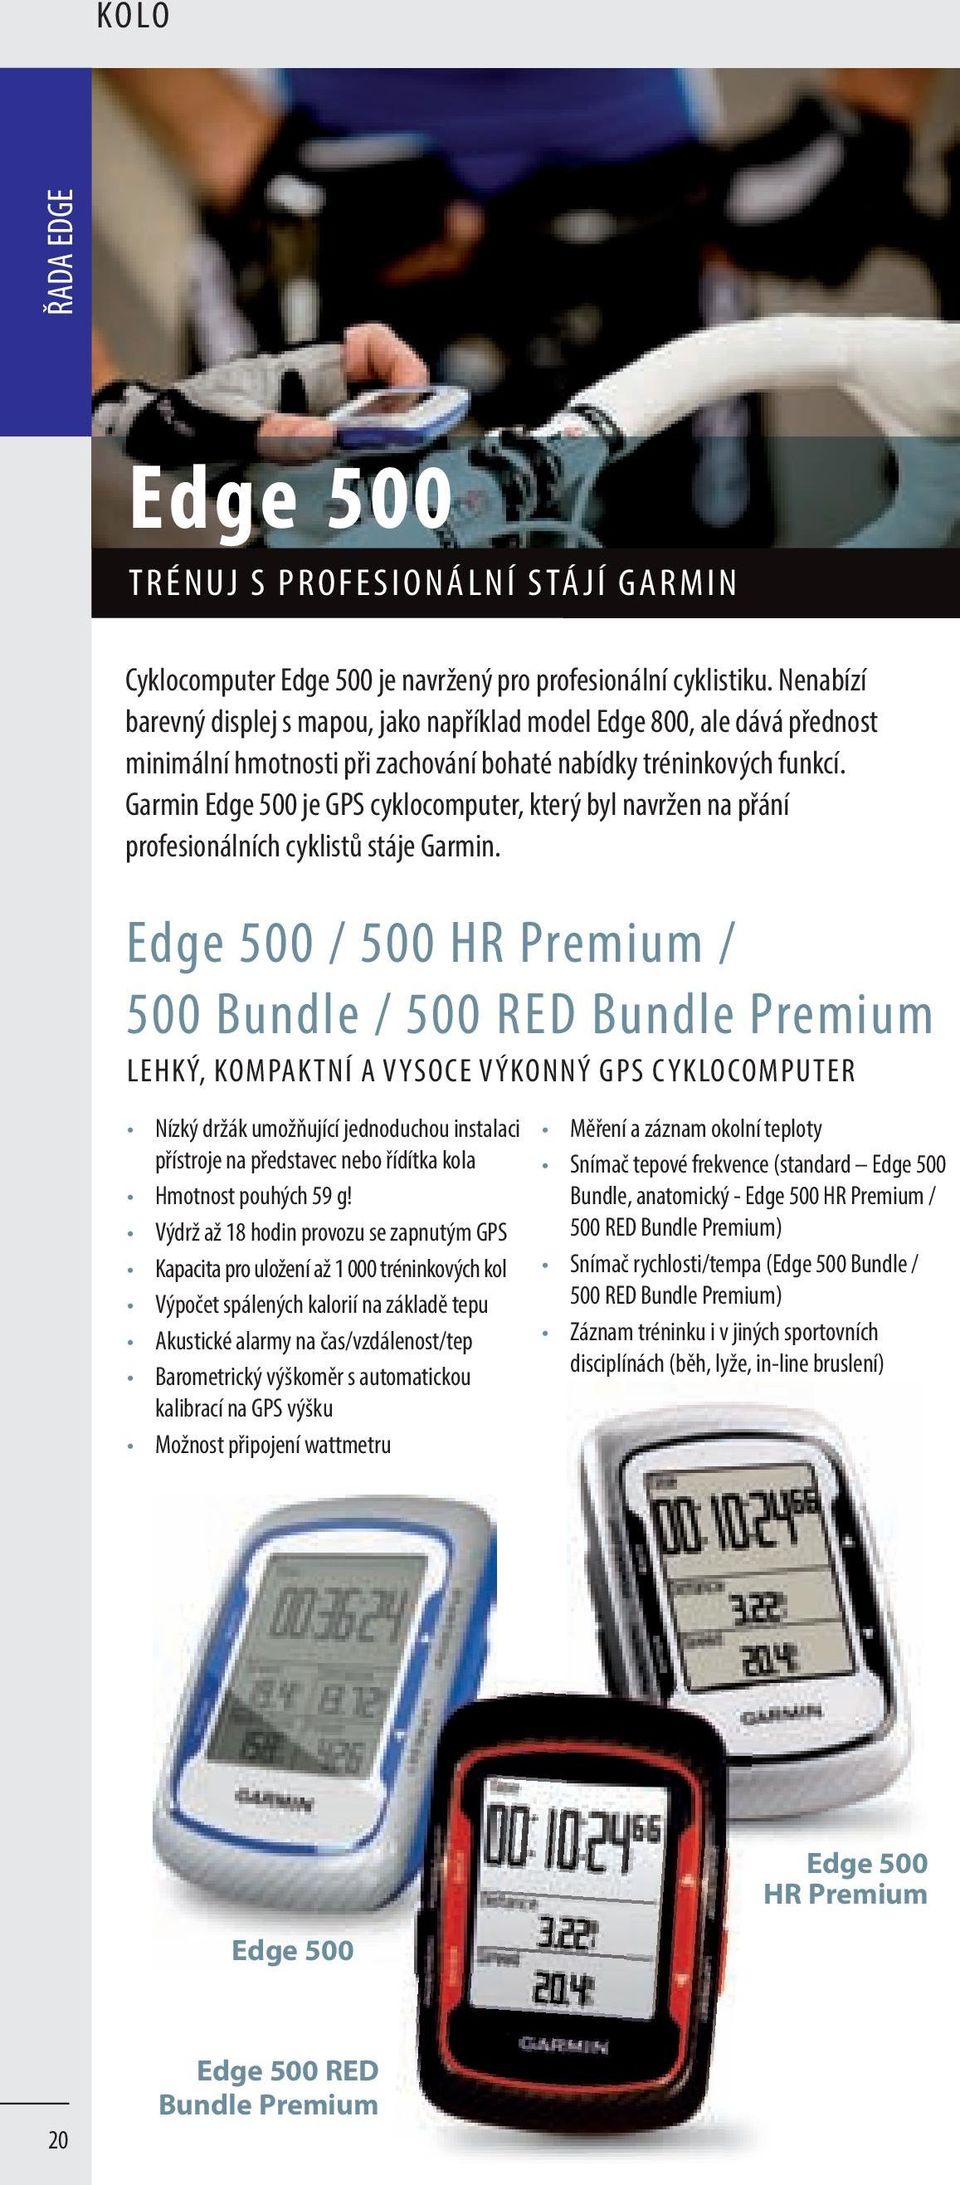 Garmin Edge 500 je GPS cyklocomputer, který byl navržen na přání profesionálních cyklistů stáje Garmin.